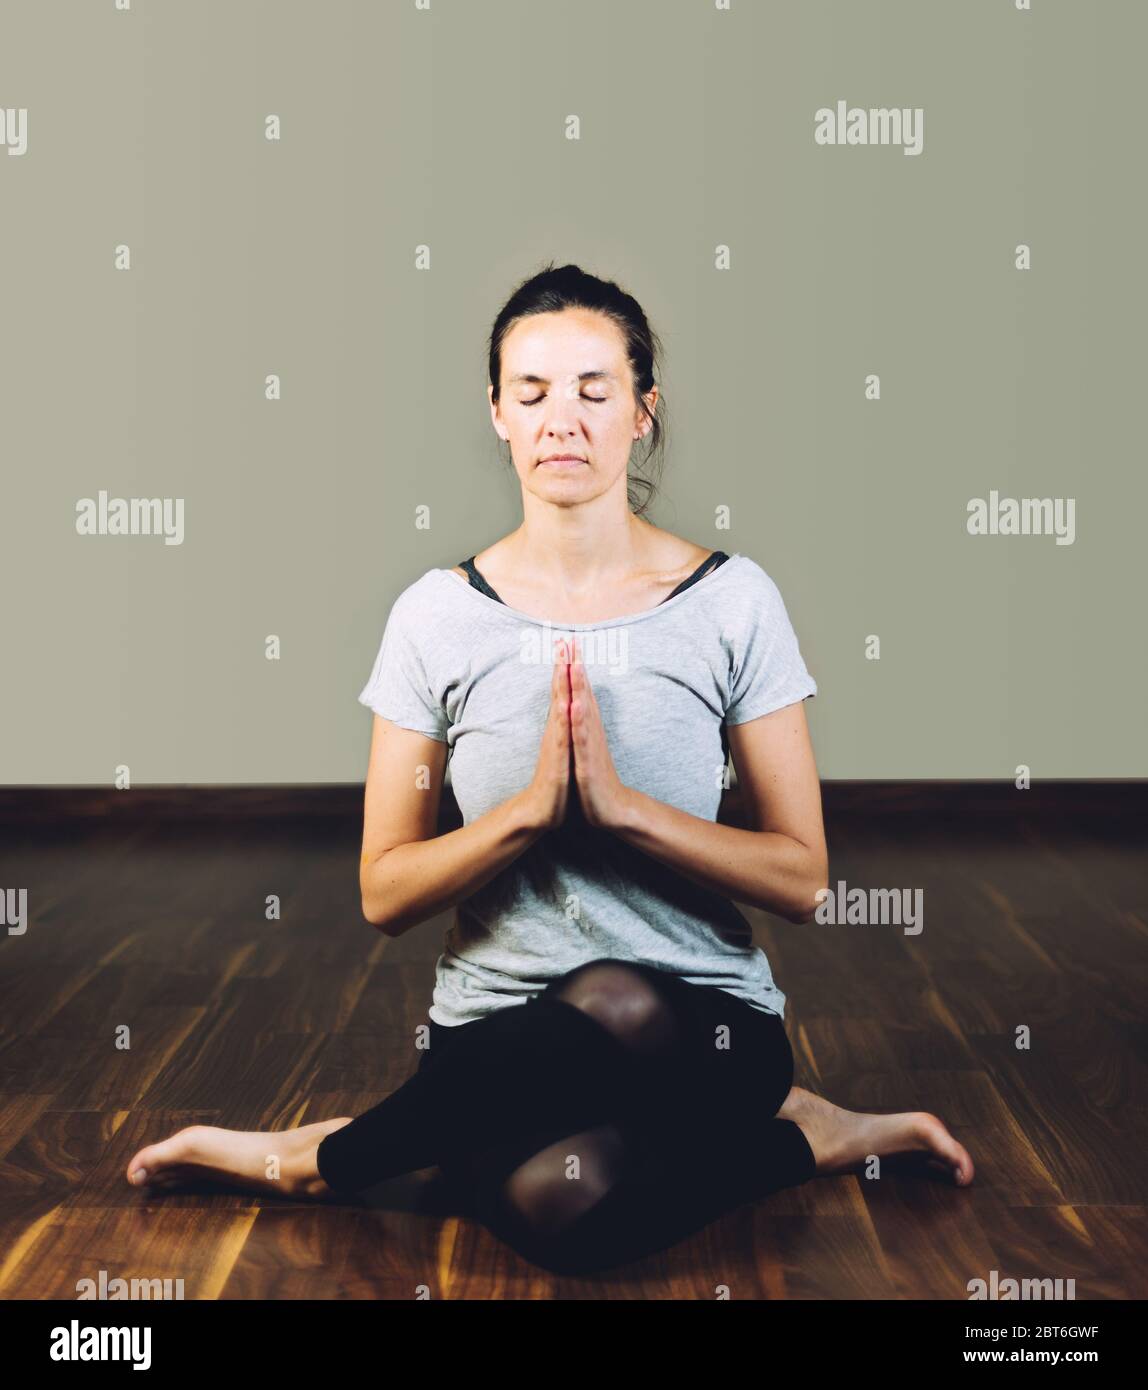 Femme assise sur le sol et à jambes croisées faisant des exercices de relaxation de yoga. Concept de vie saine et yoga Banque D'Images